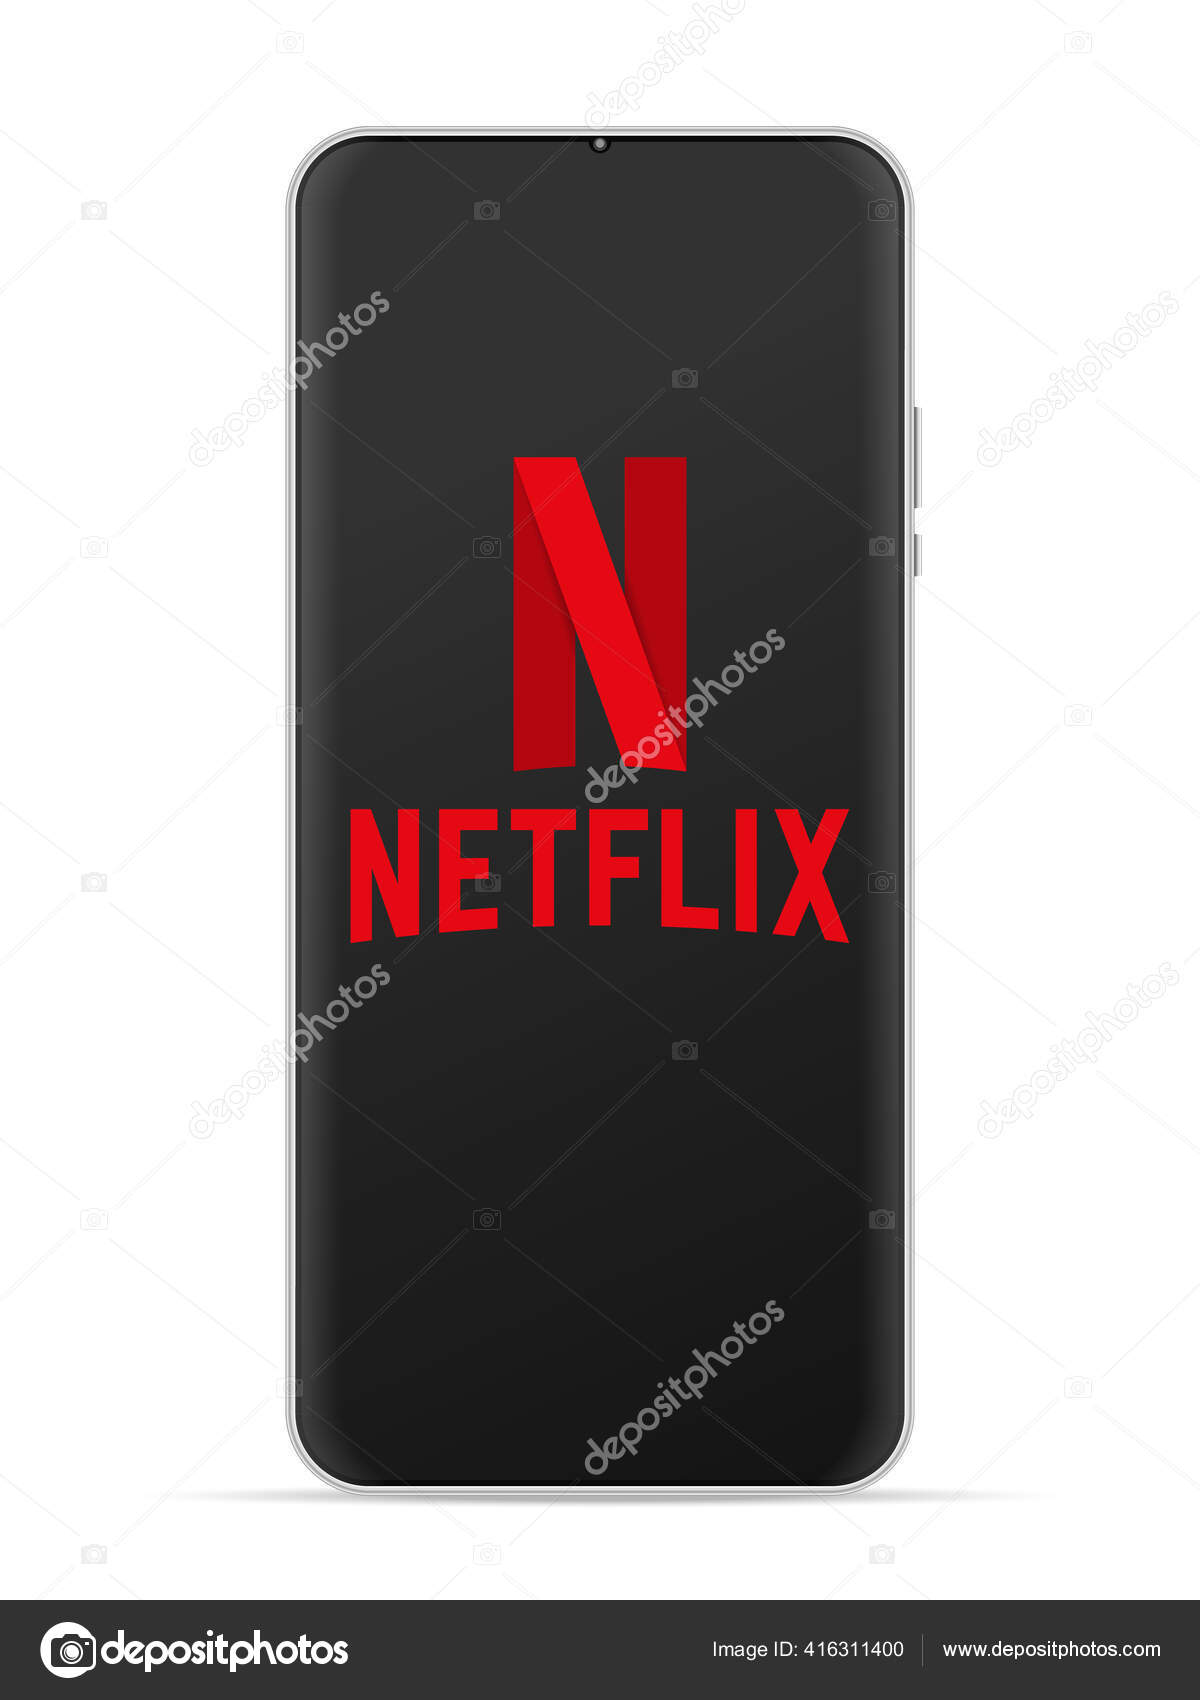 Chào mừng đến với nền tảng truyền hình trực tuyến hàng đầu thế giới! Logo của Netflix được thiết kế độc đáo để phản ánh nội dung giải trí độc quyền của chúng tôi. Nhấn play ngay để khám phá thế giới giải trí tuyệt vời của Netflix!